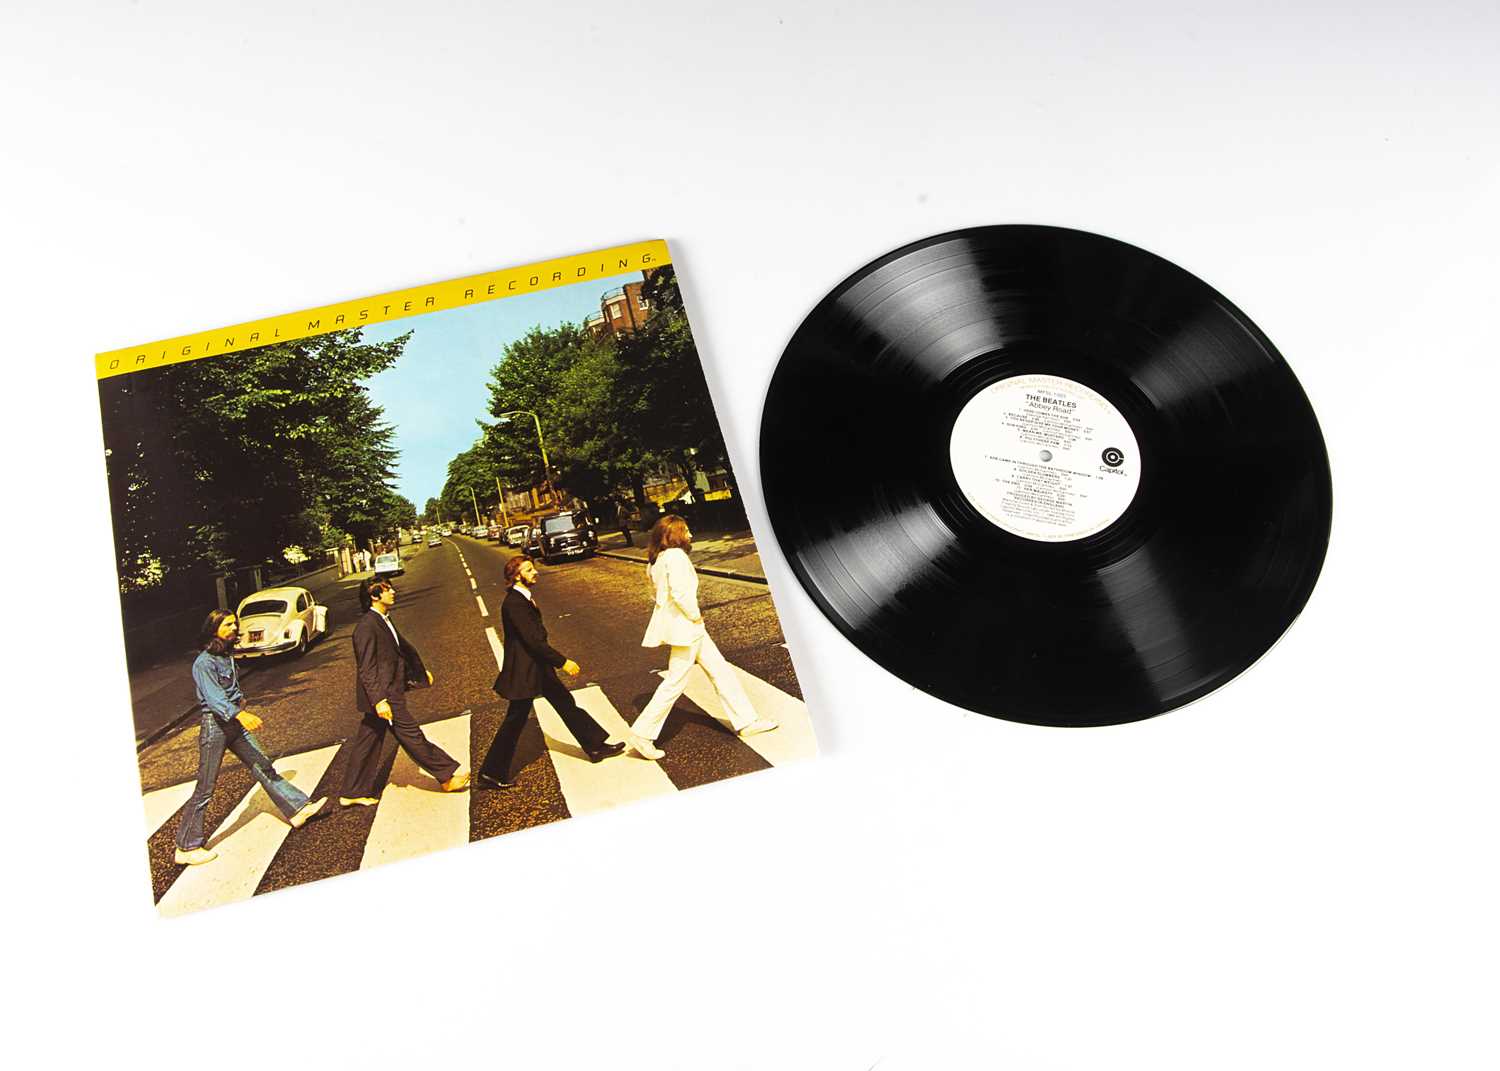 Lot 174 - Beatles LP